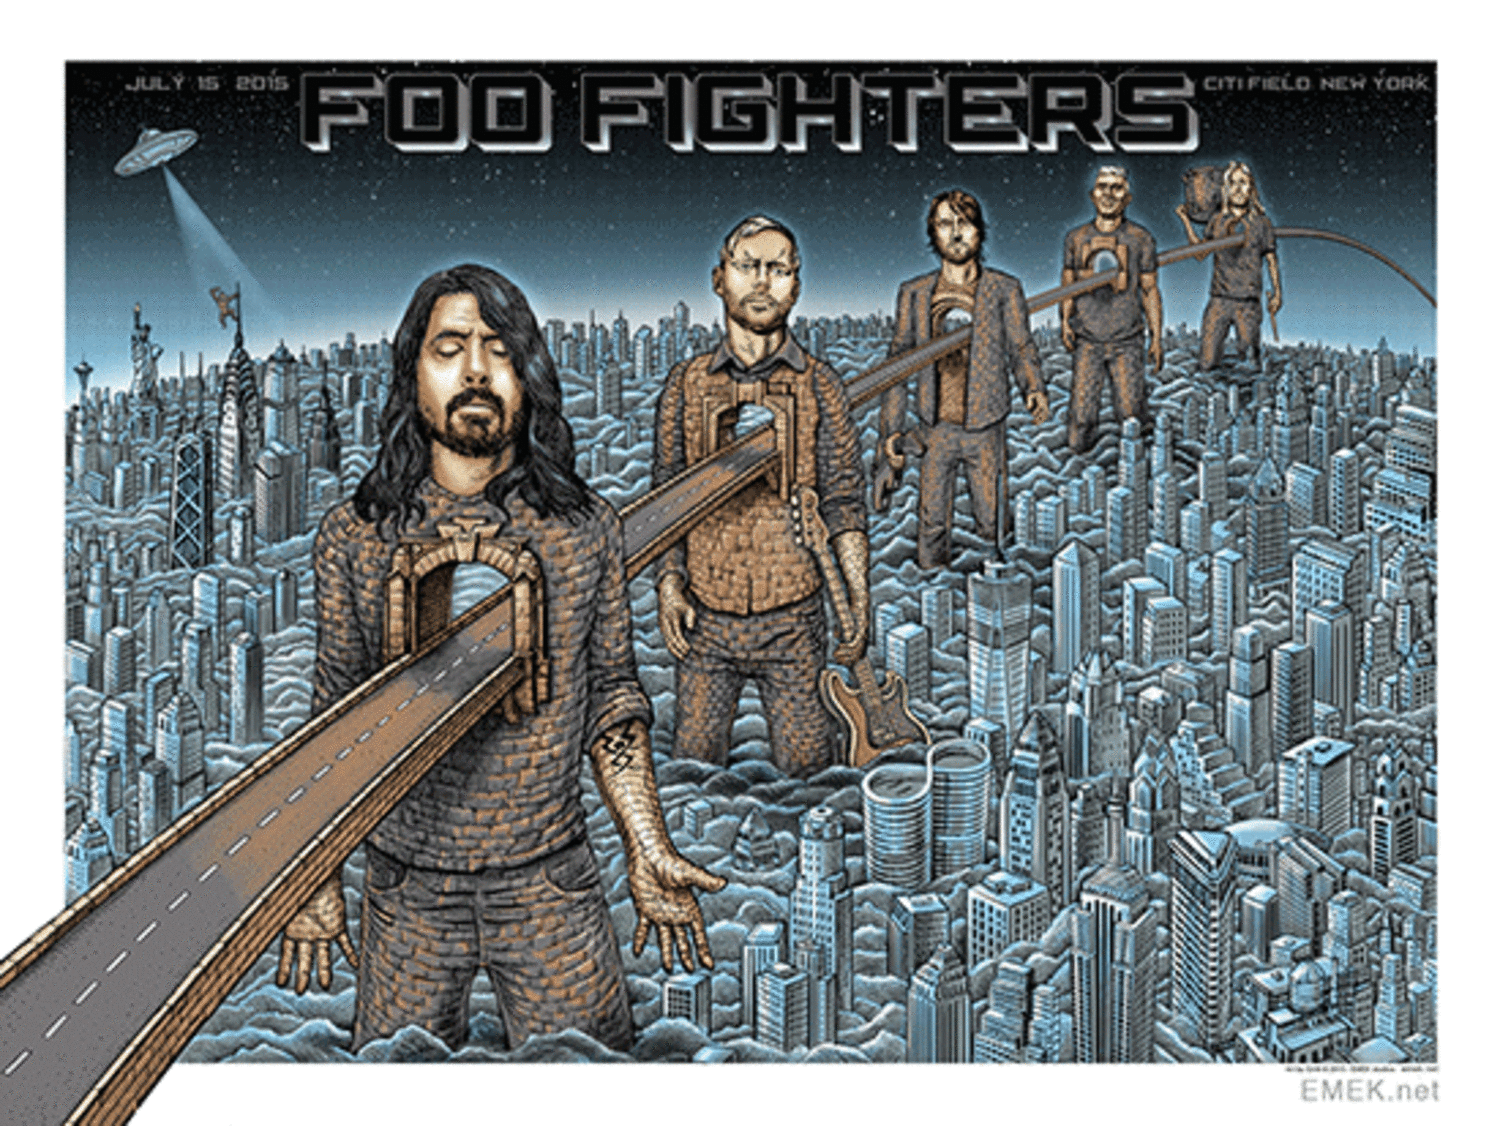 EMEK 2015 Foo Fighters "NYC Sonic Highway" Silkscreen Concert Poster